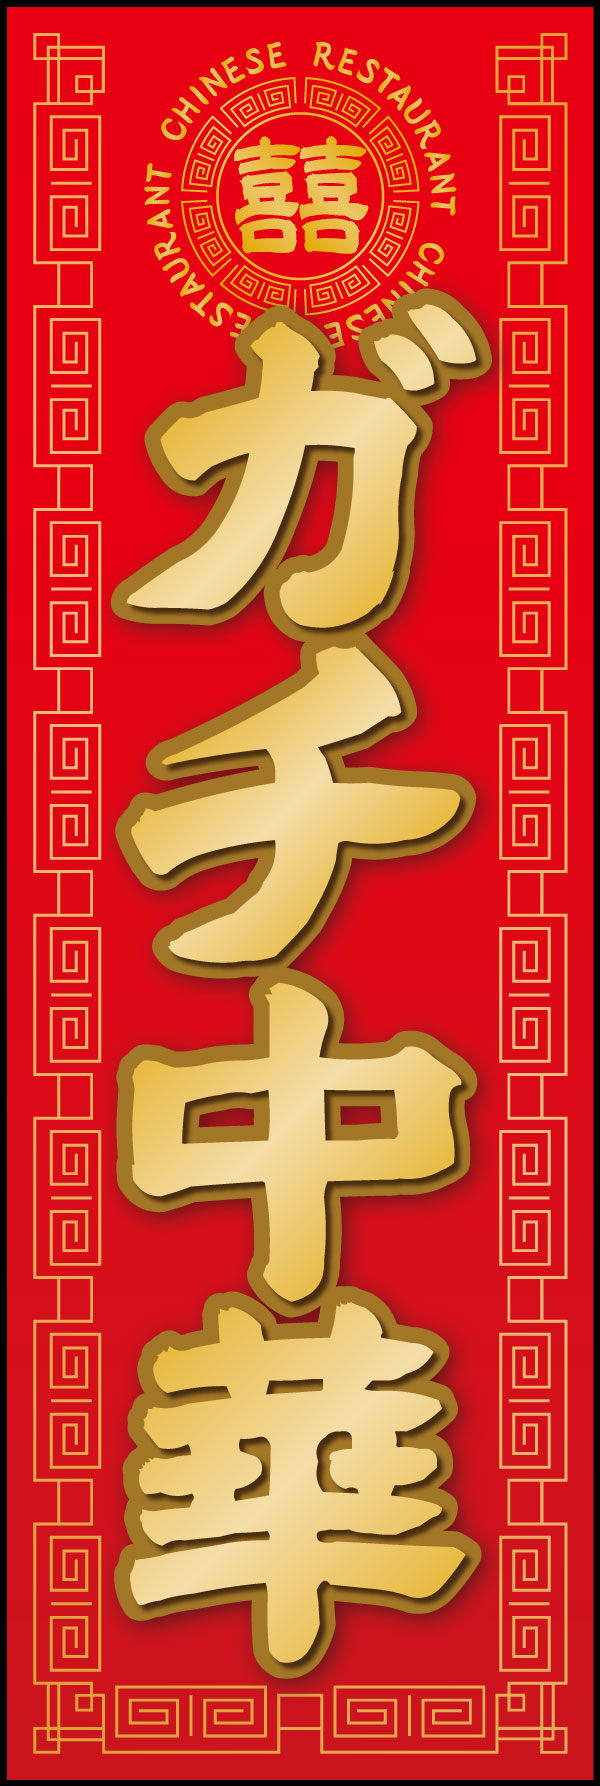 ガチ中華 6 「ガチ中華」ののぼりです。本場中国の料理が楽しめるお店にぴったりなデザインにしました。(Y.M)